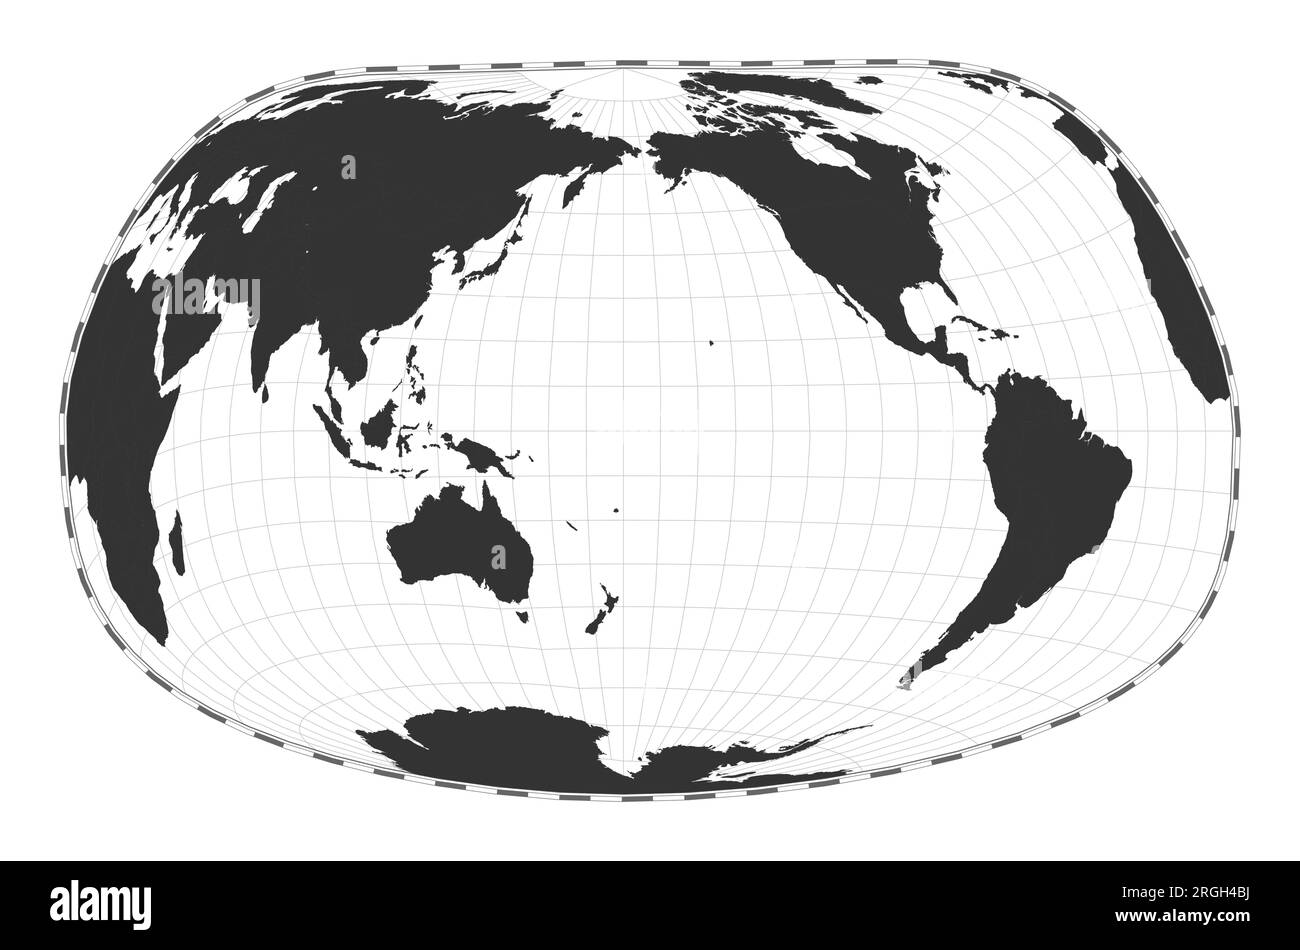 Vector-Weltkarte. Jacques Bertins Projektion 1953. Geografische Karte mit Breiten- und Längengraden. Zentriert auf 180deg Längengrad. Vect Stock Vektor